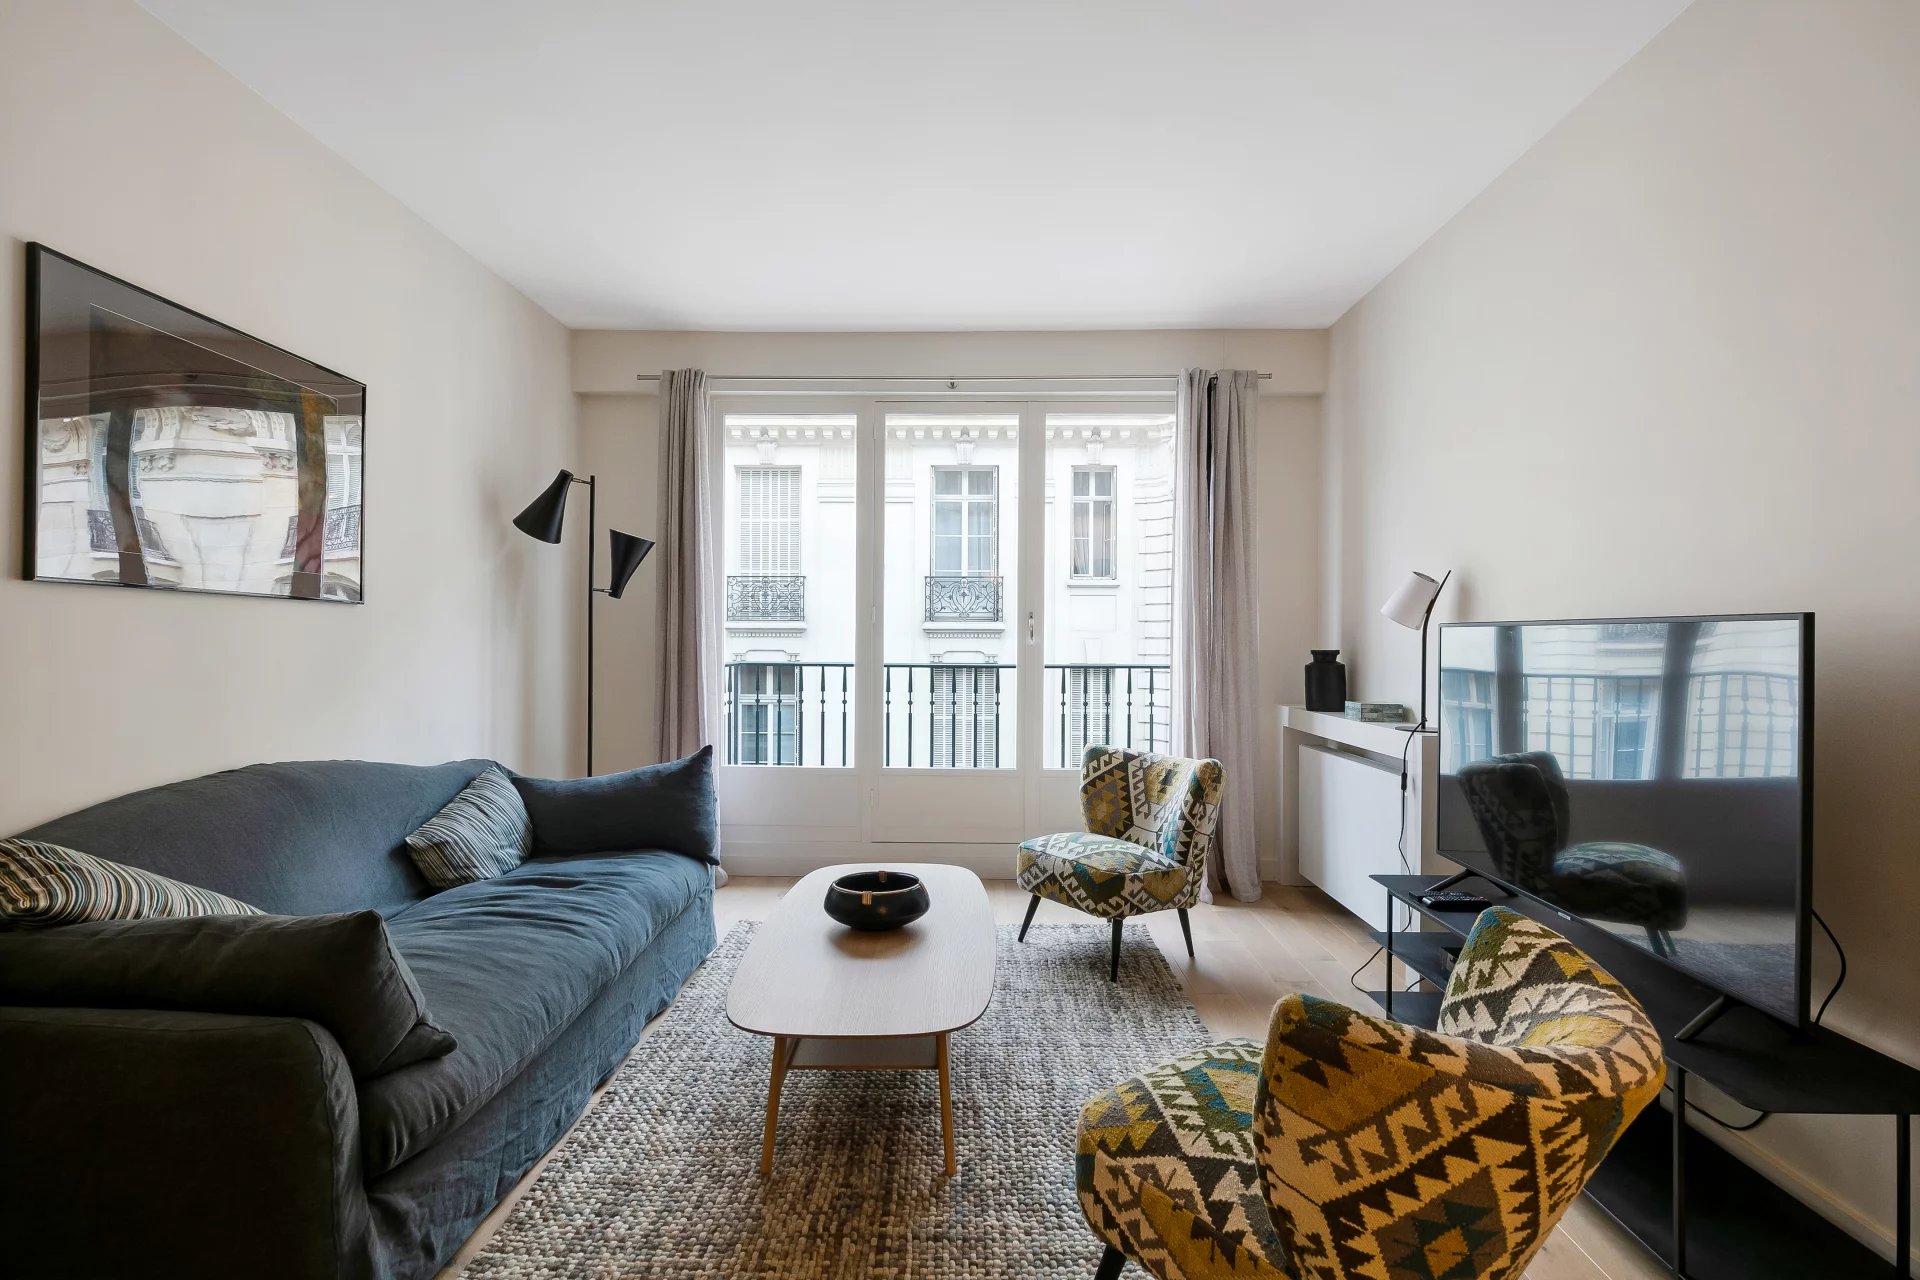 Sale Apartment - Paris 8th (Paris 8ème) Faubourg-du-Roule